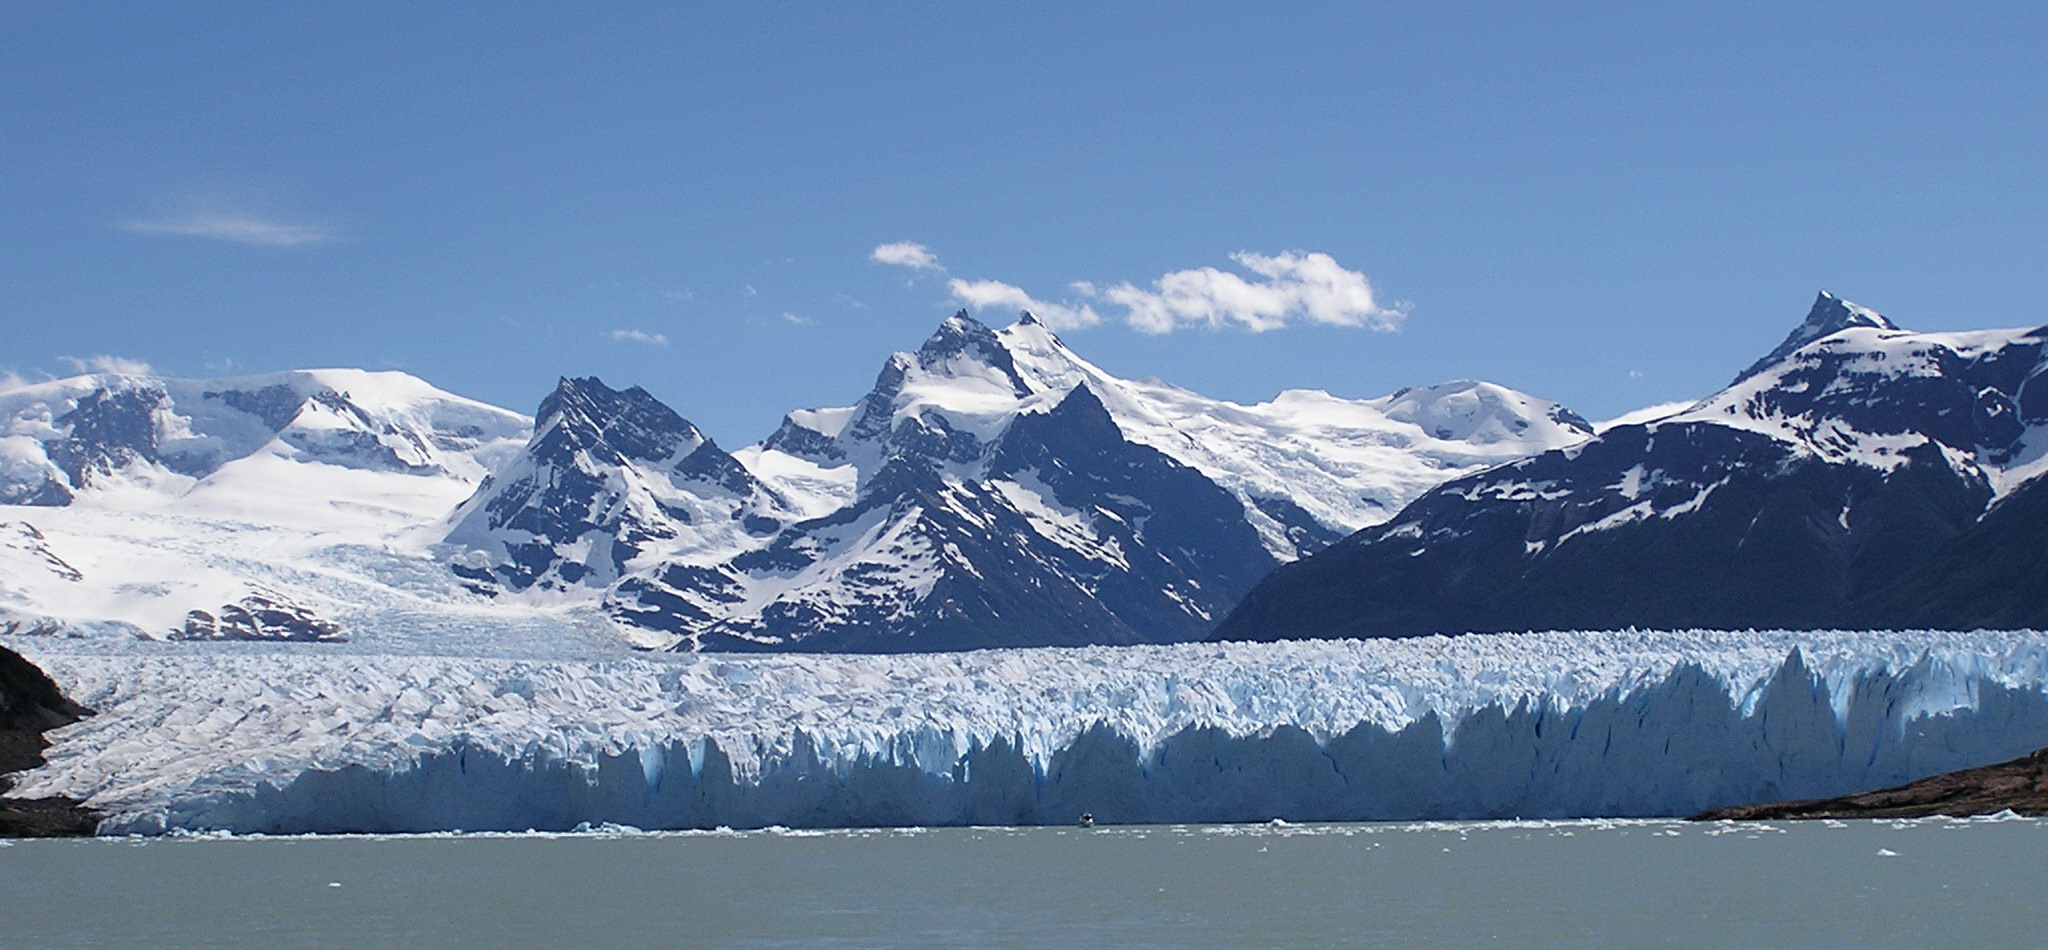 Canal de los Tempanos Glaciar Perito Moreno Parque Nacional Los Glaciares Argentina 106